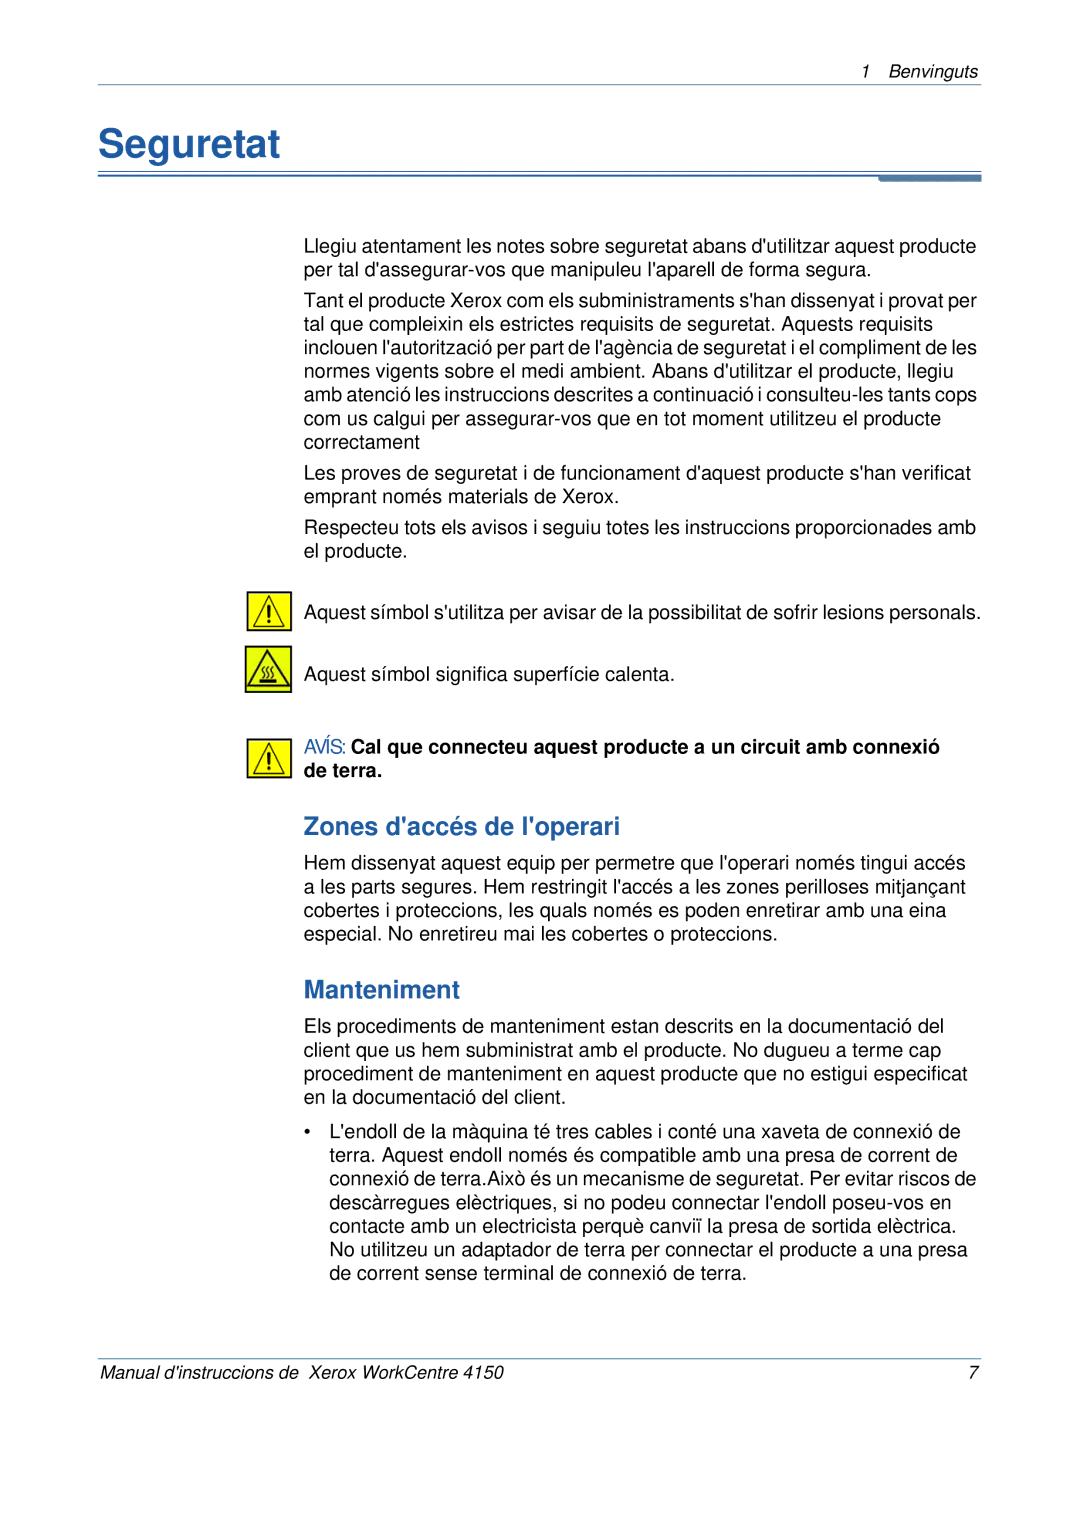 Xerox 5.0 24.03.06 manual Seguretat, Zones daccés de loperari, Manteniment 